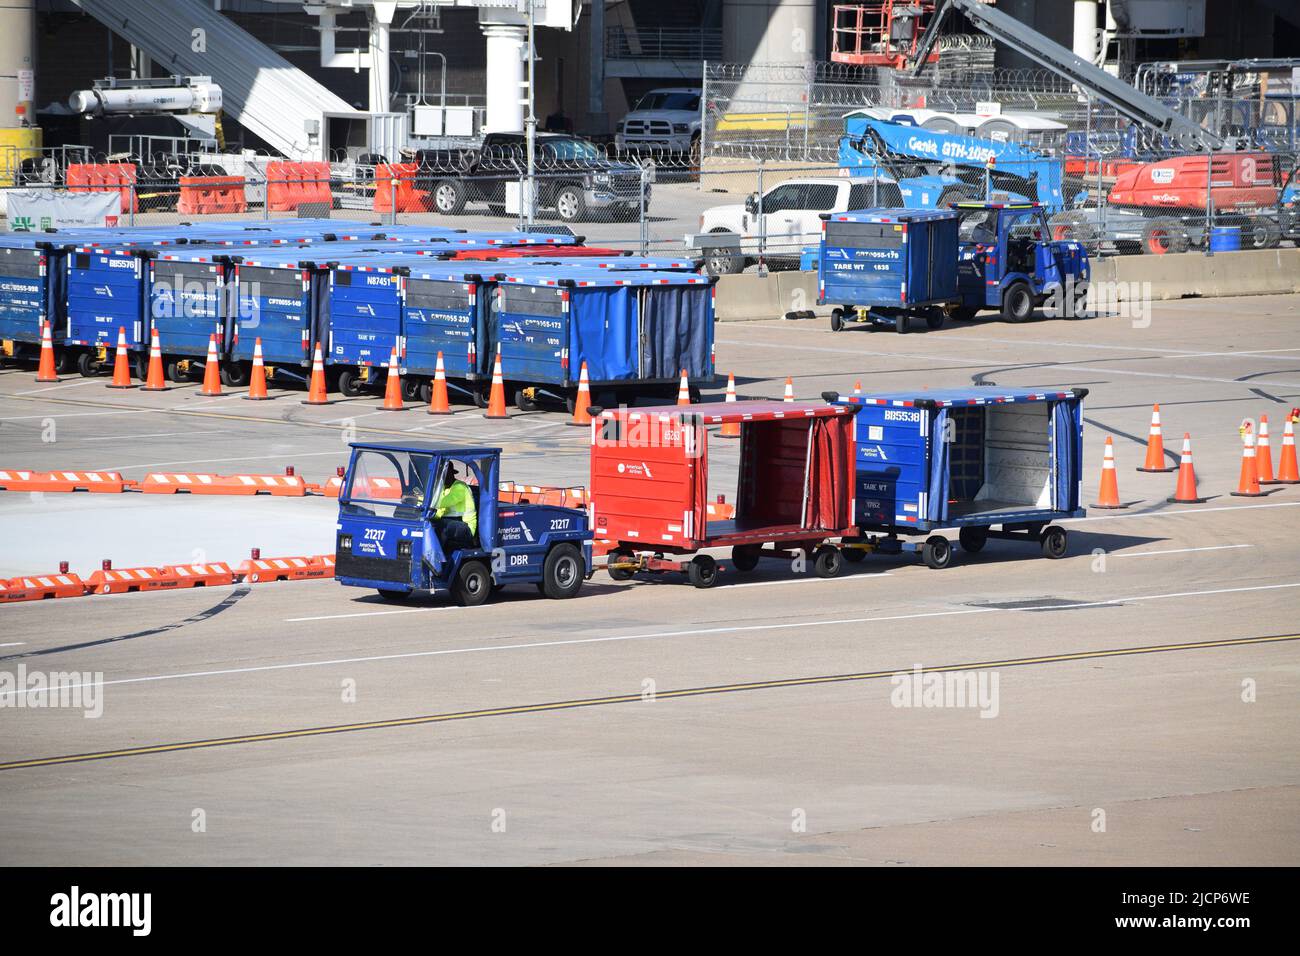 Una rampa di American Airlines serve i lavoratori che guidano un trattore che tirano i bagagli all'esterno del terminal C dell'aeroporto DFW (aeroporto di Dallas-Fort Worth) Foto Stock